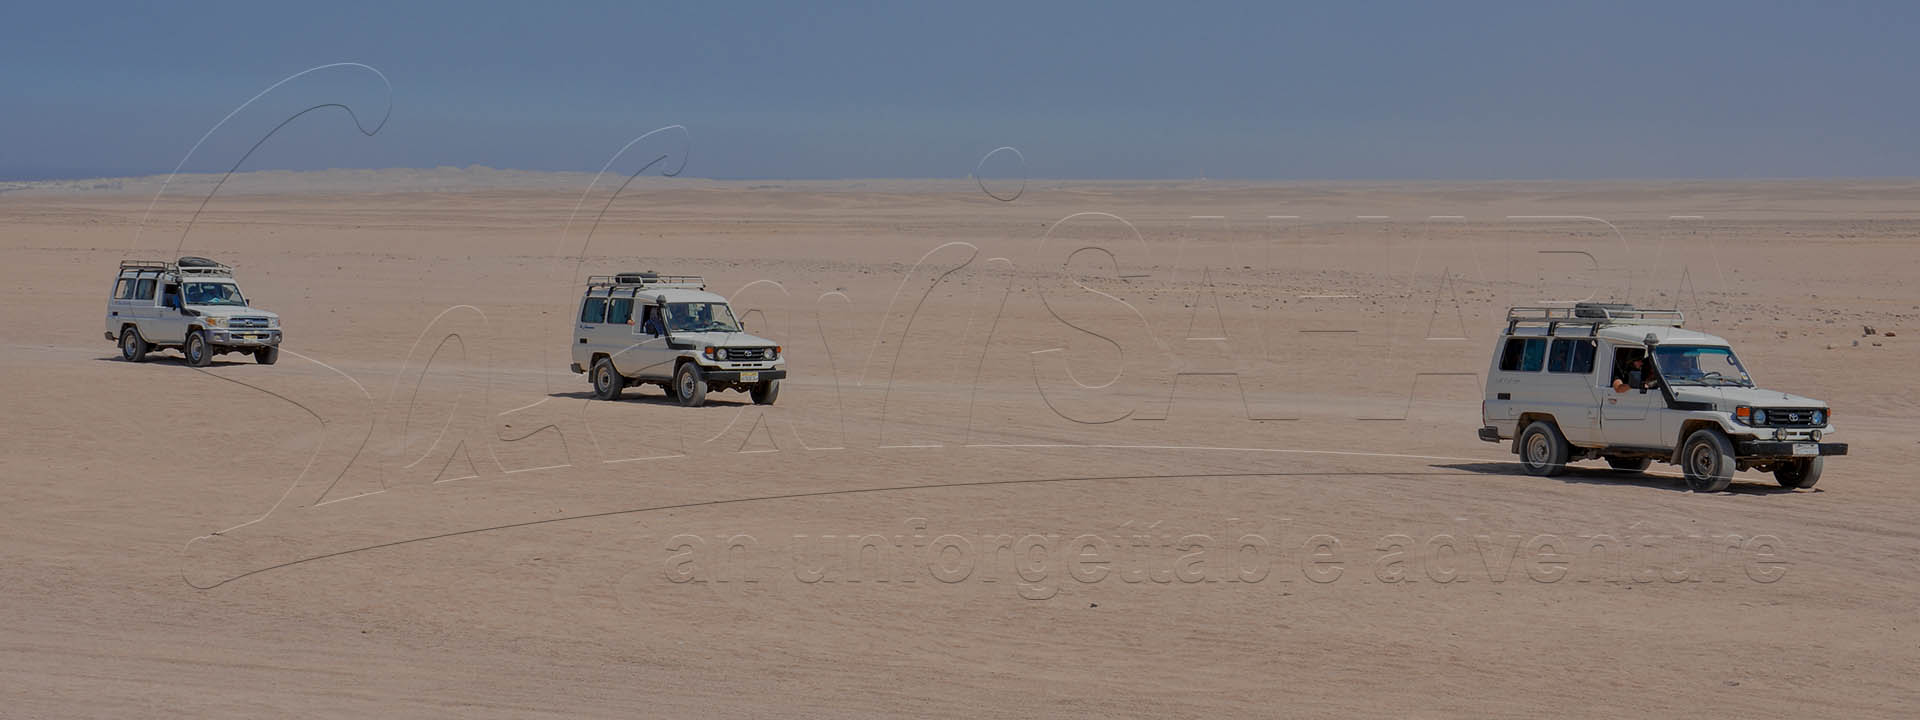 Дневное сафари в пустыне Эль-Гуна